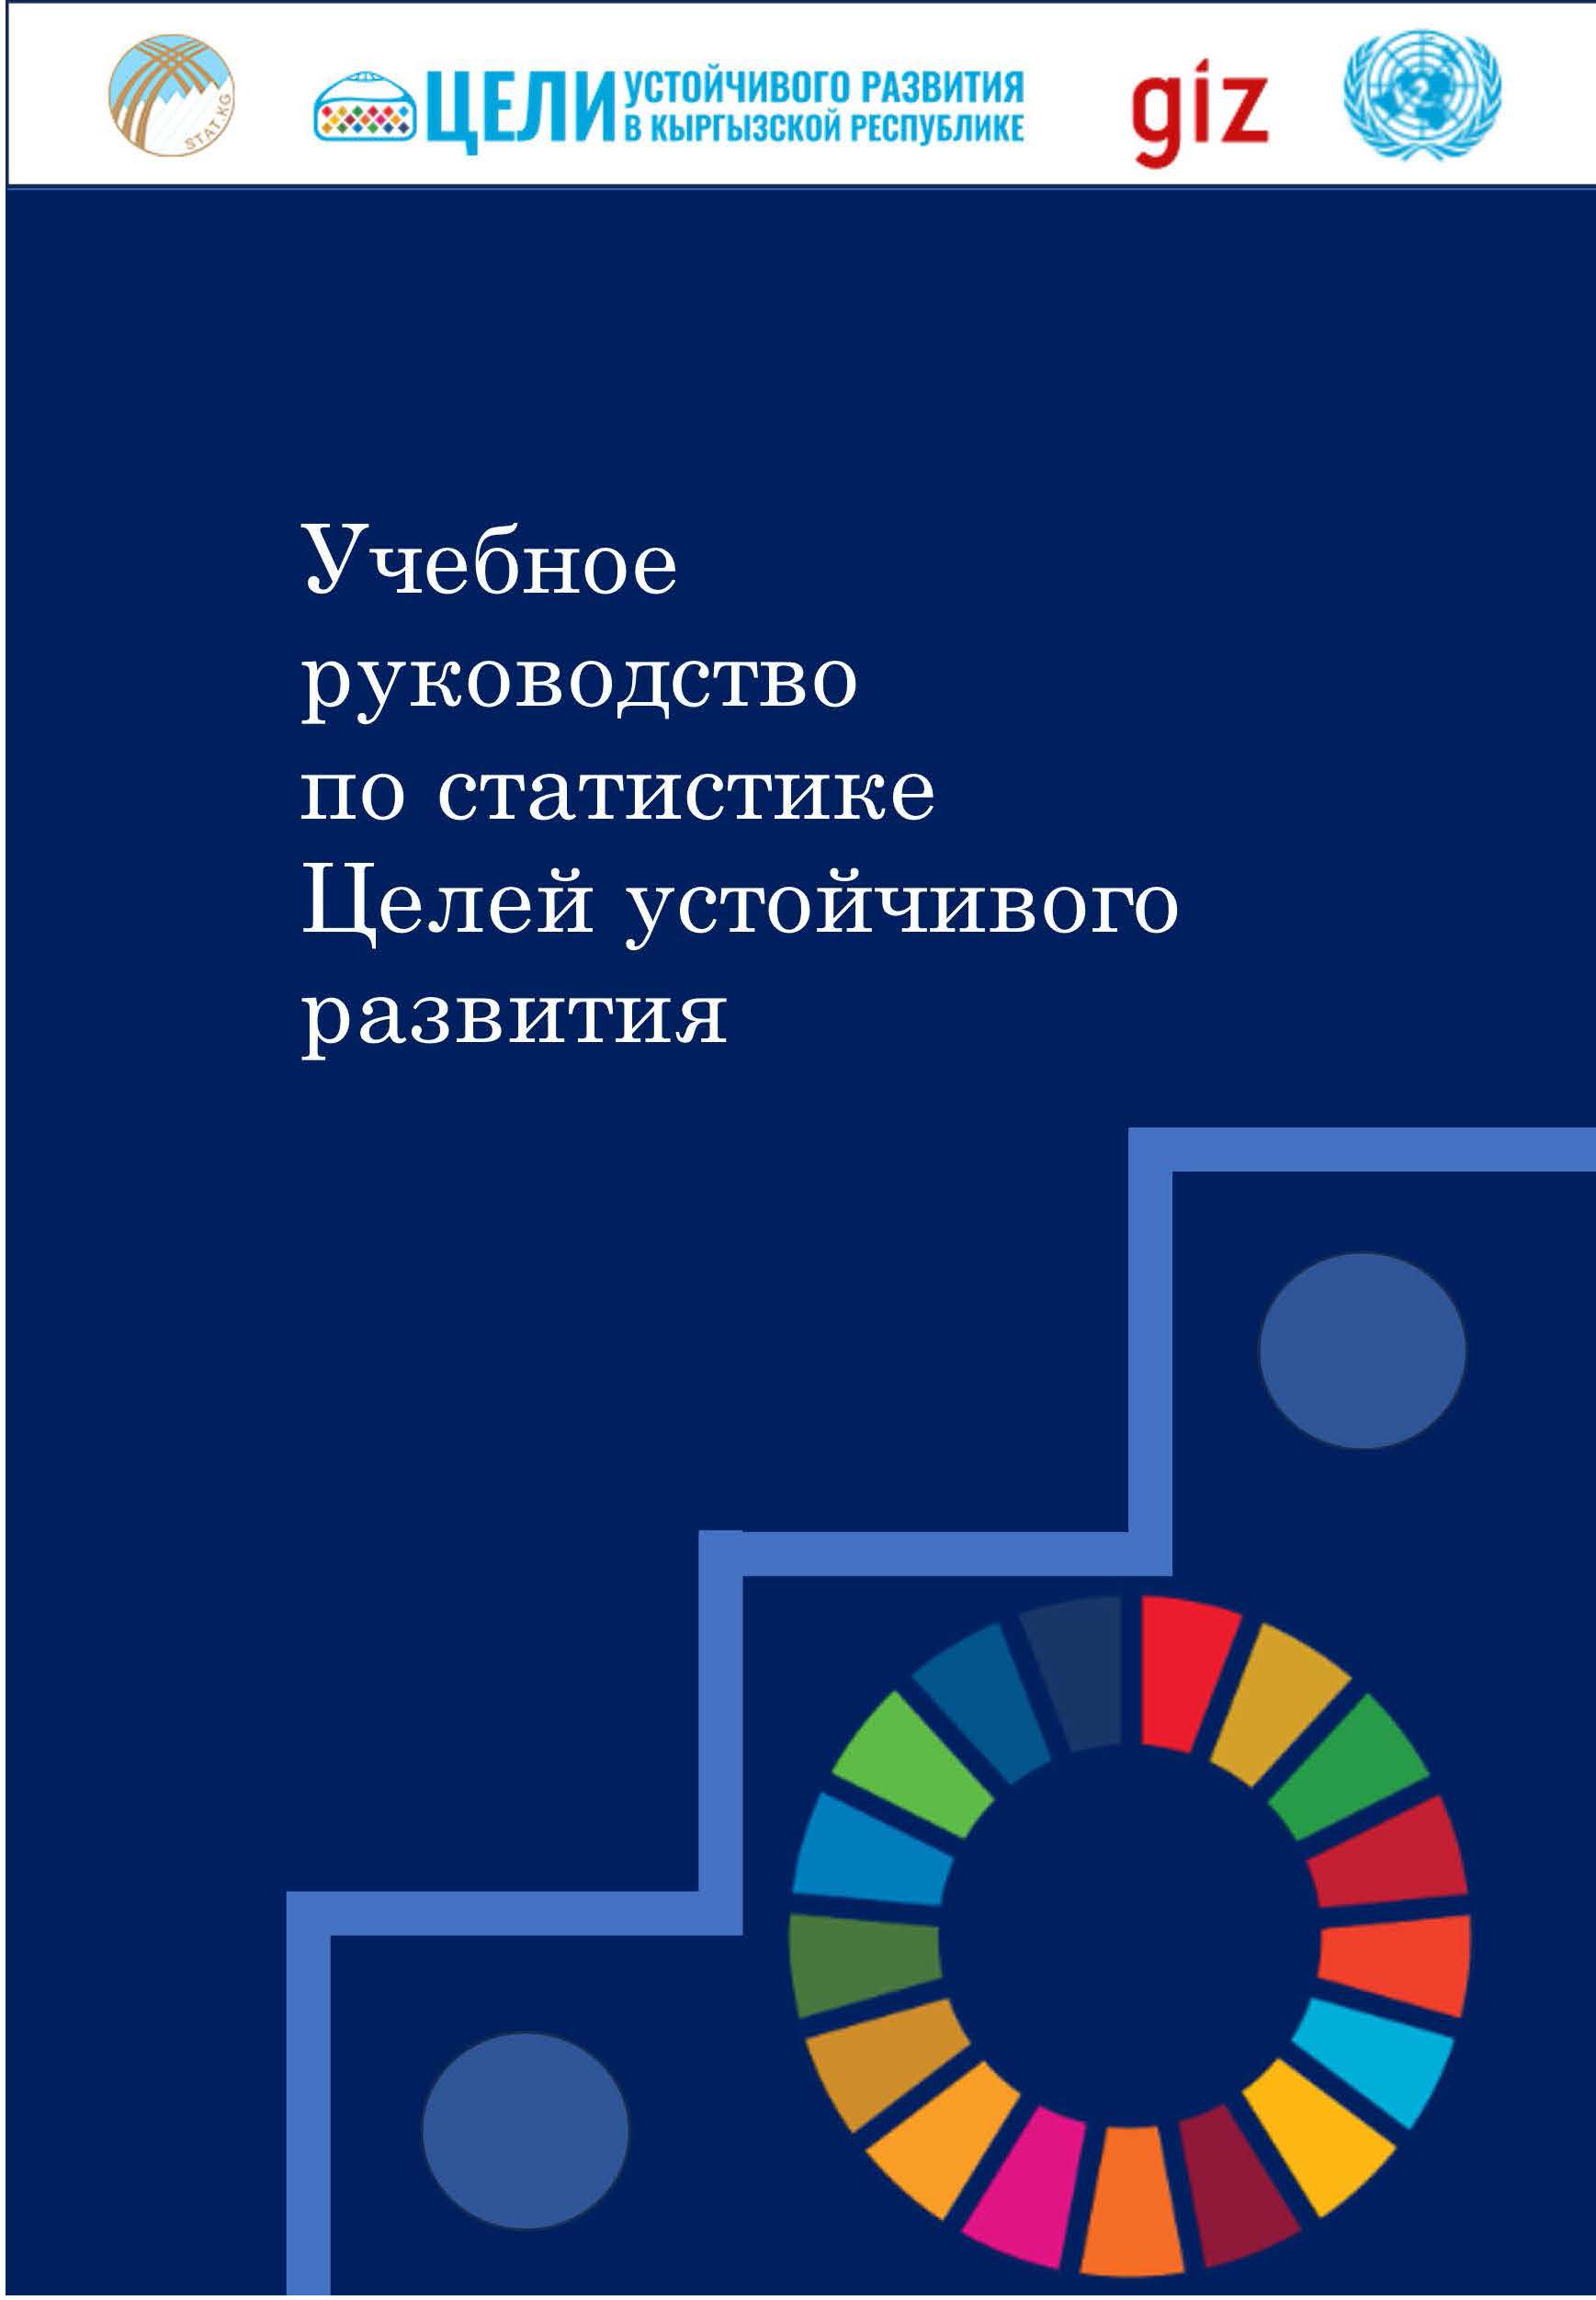 Учебное руководство по статистике Целей устойчивого развития